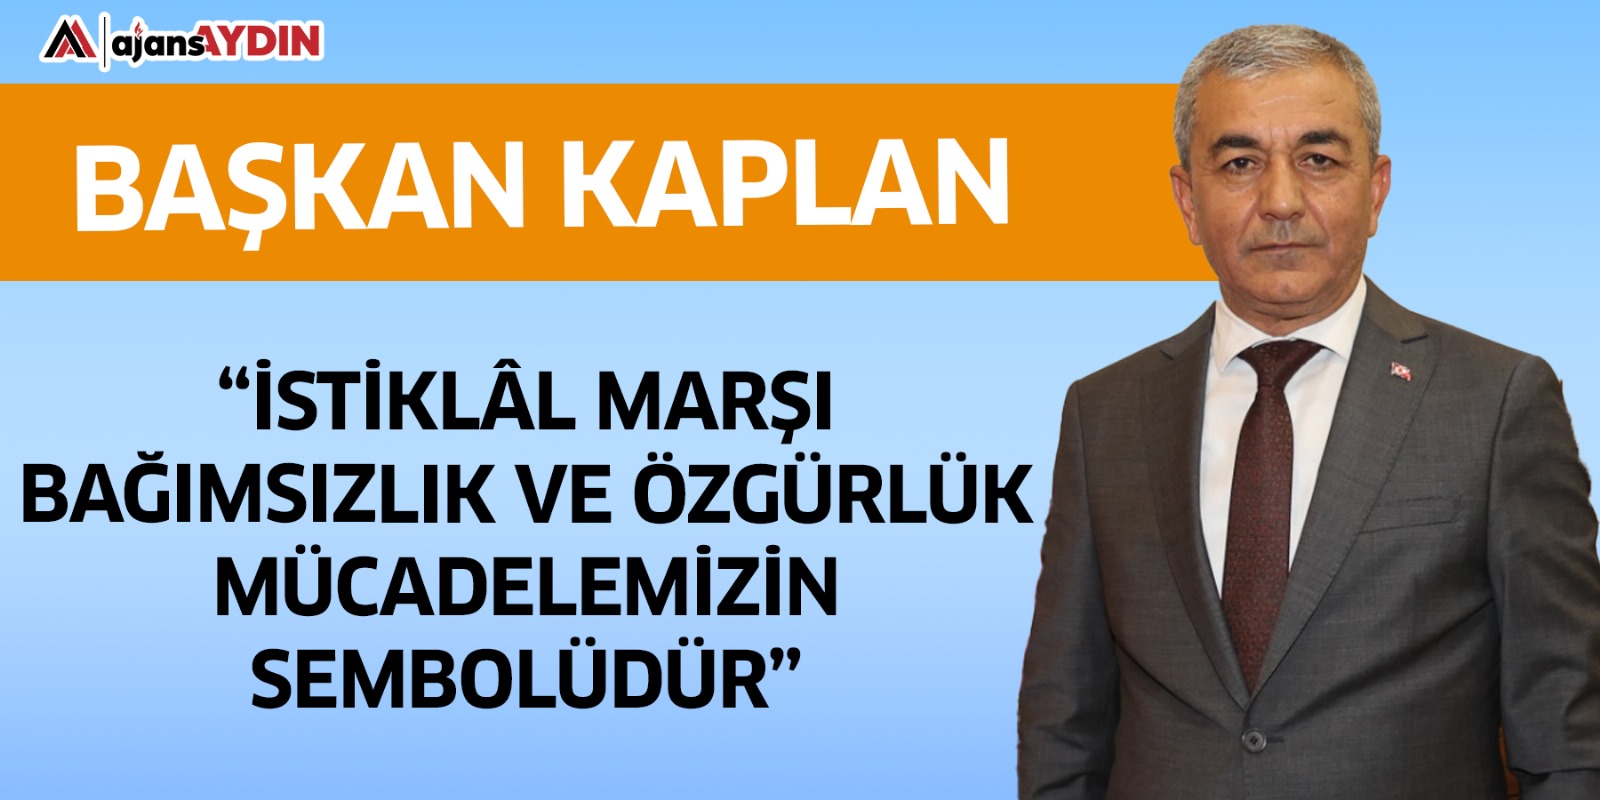 Başkan Kaplan, “İstiklâl Marşı bağımsızlık ve özgürlük mücadelemizin sembolüdür”  Koçarlı Belediye Başkanı Nedim Kaplan, Türkiye